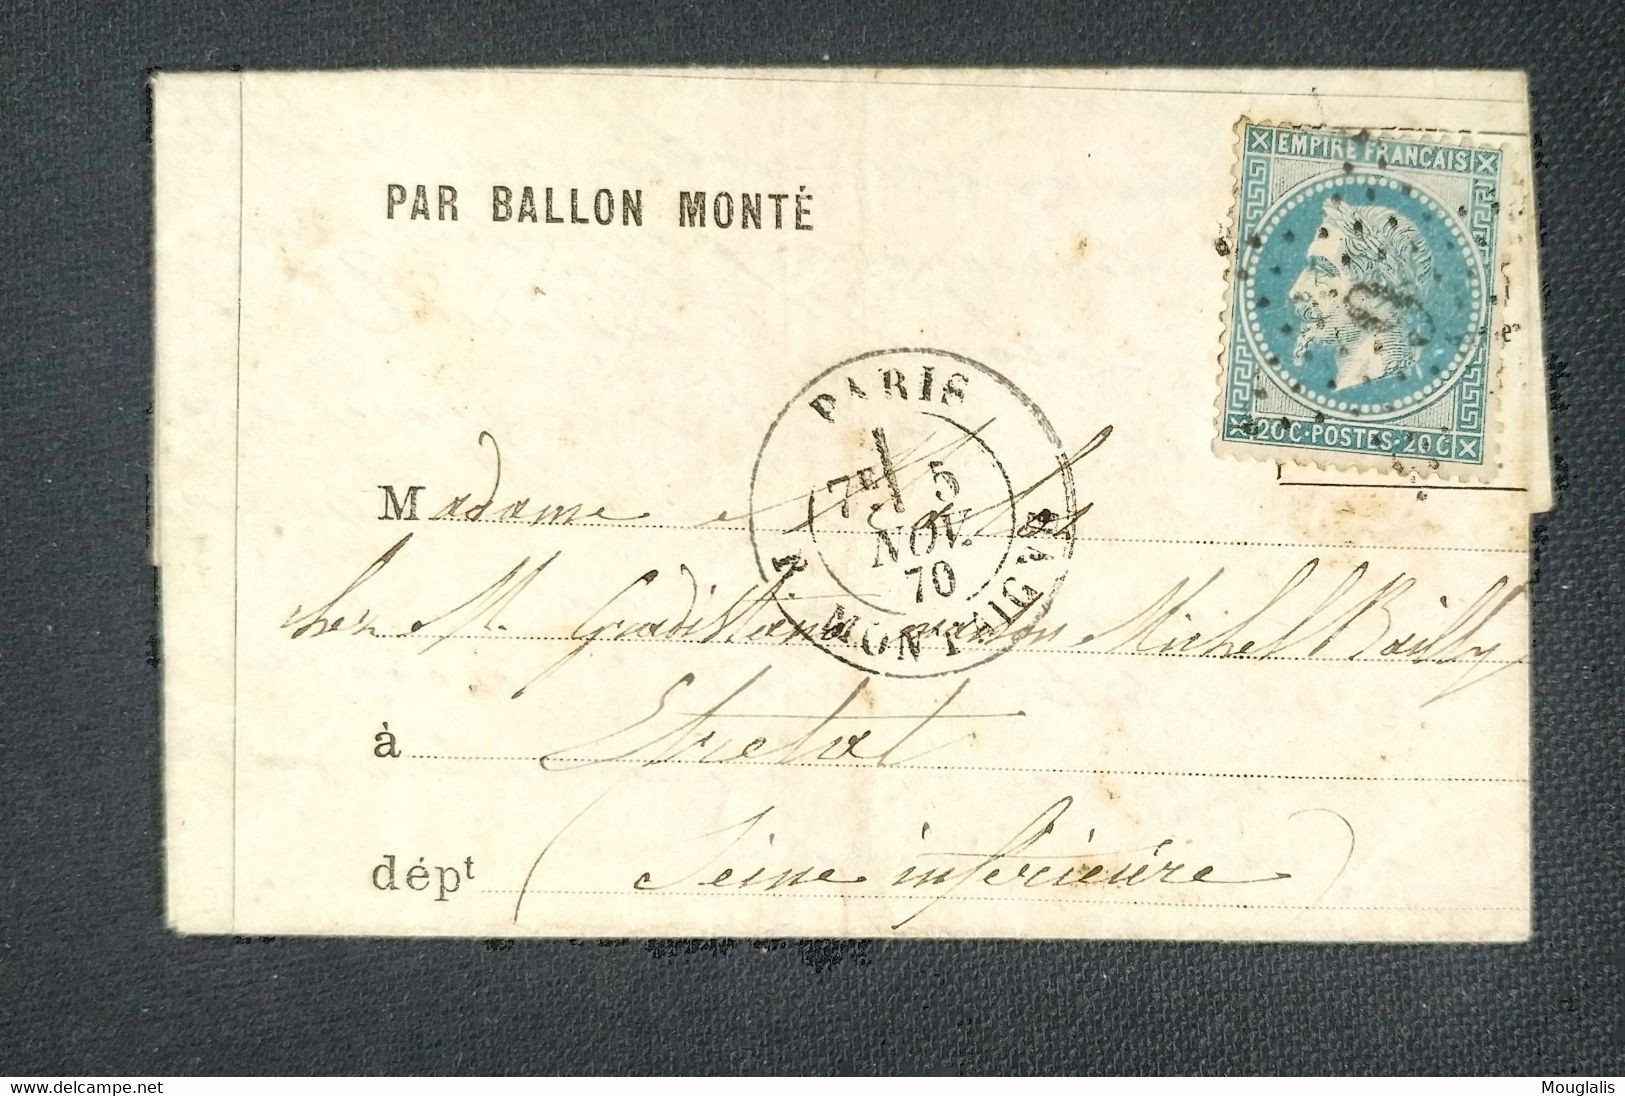 TB Lettre 5 novembre 1870 par ballon monté pour Étretat arrivé le 9/11  La ville de Châteaudun dentelé bleu n°29